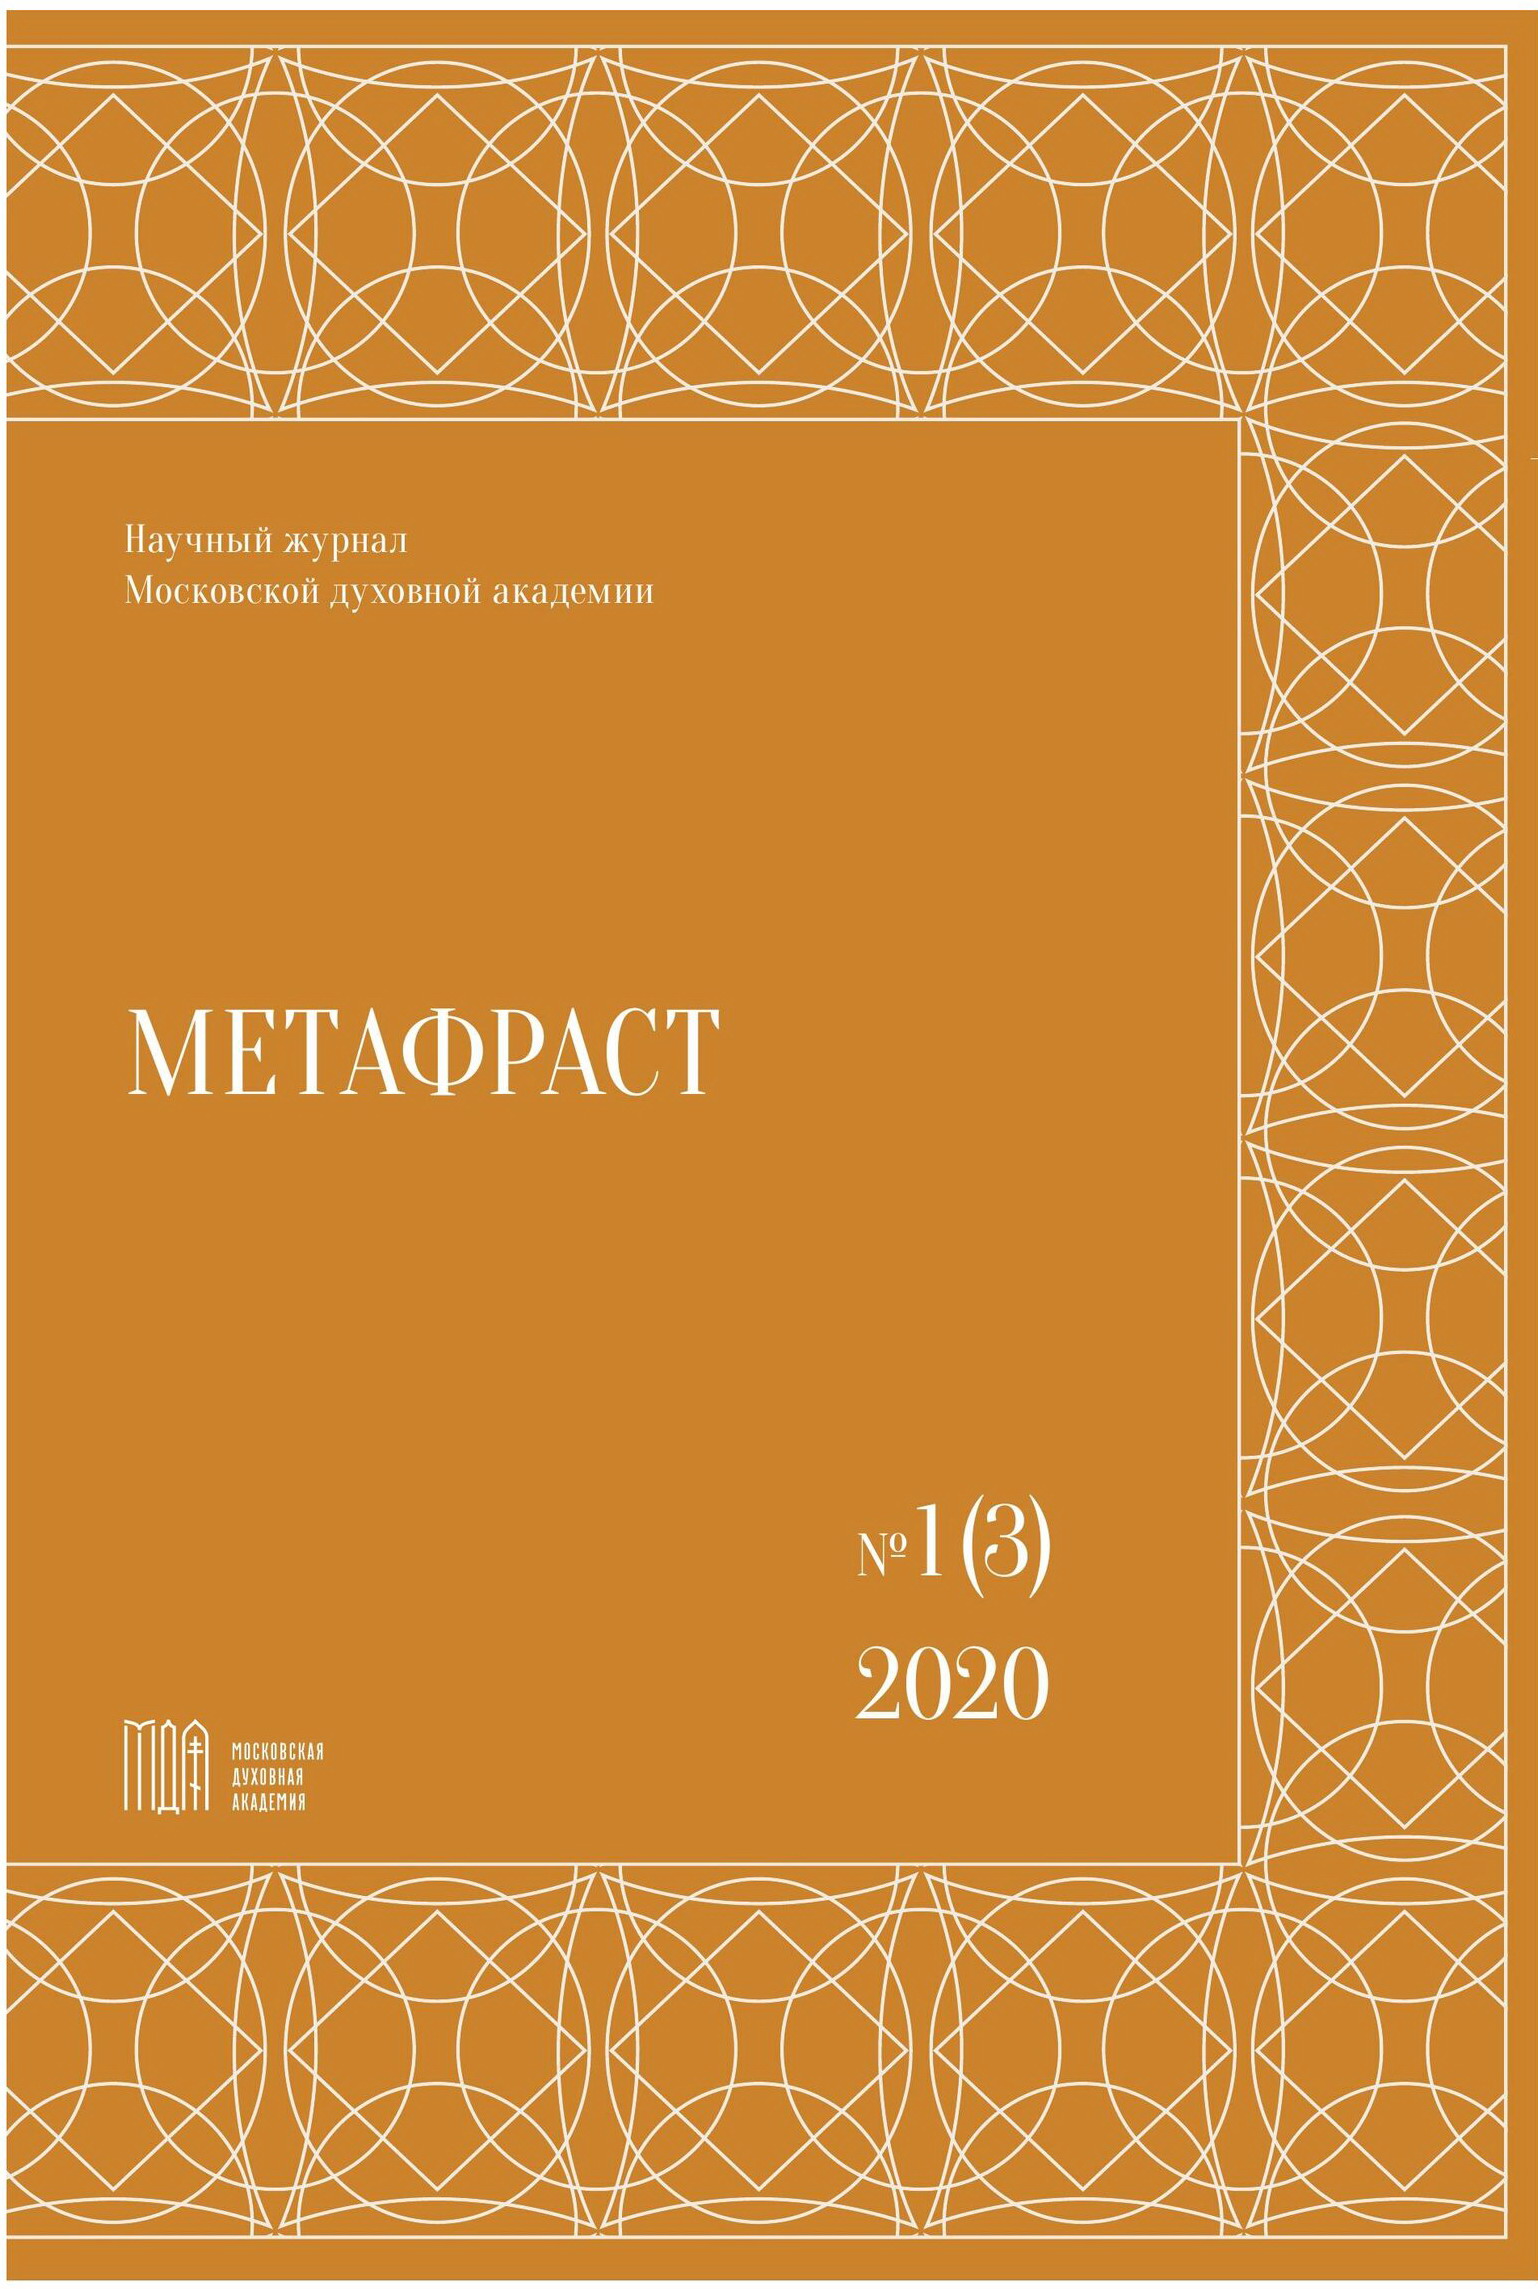 					View No. 1 (3) (2020): Metaphrast
				